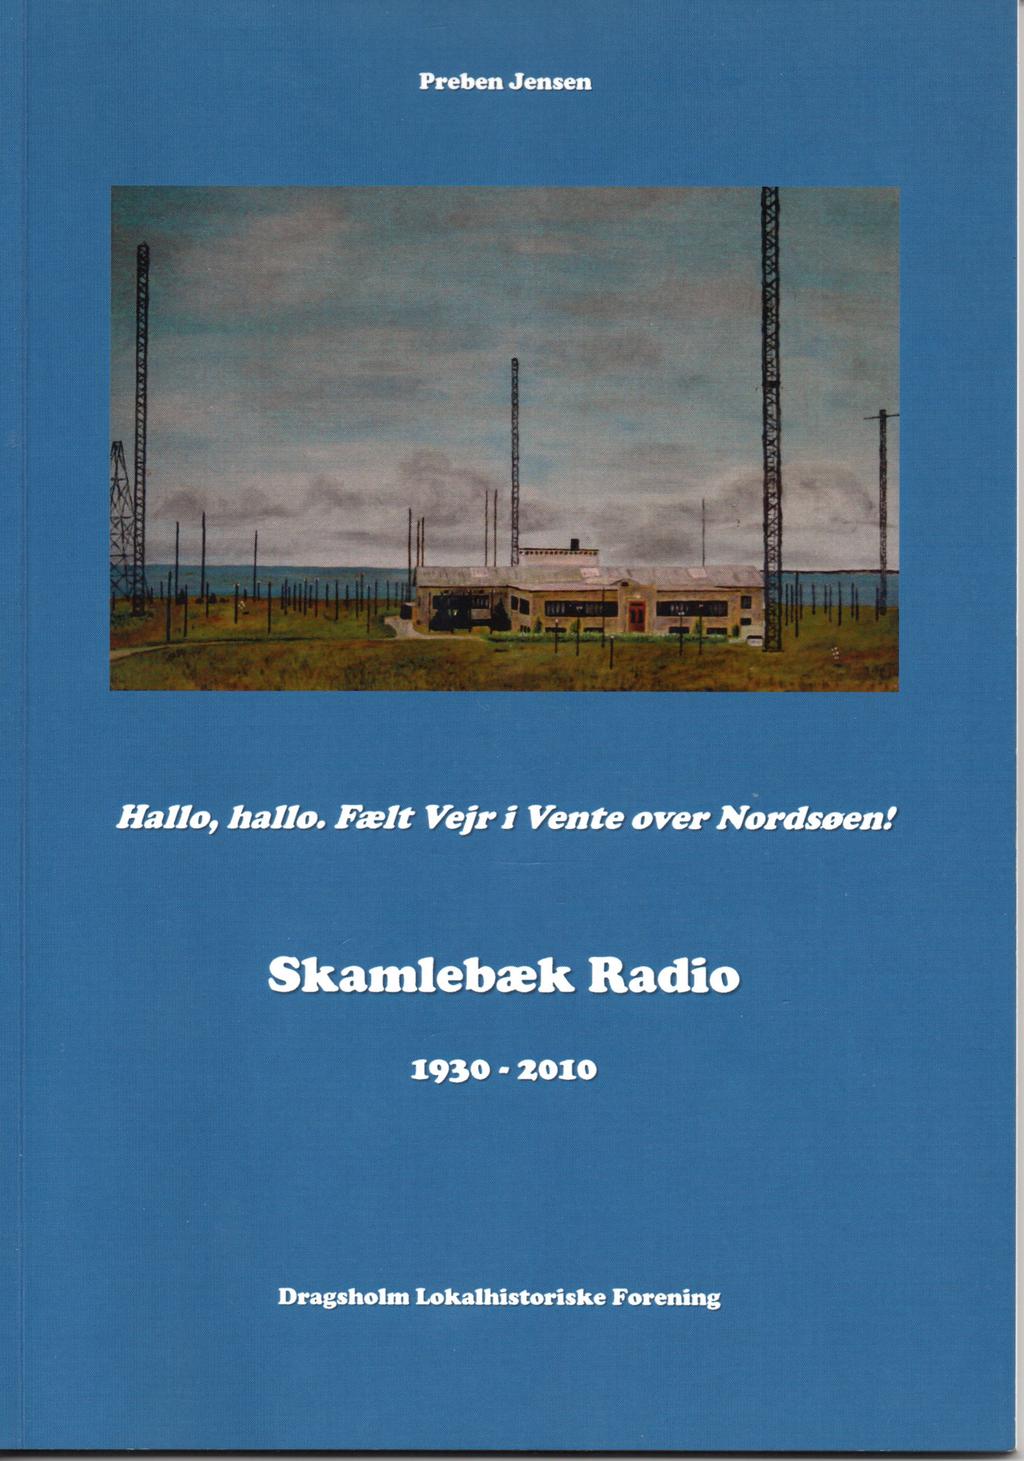 Preben var ansat ved Skamlebæk Radio fra 1966 til 1992, fra 1980 til 1992 var han endog leder af Radiostationen. Efterfølgende havde Preben flere lederjob hos P&T indtil pensioneringen i 2004.